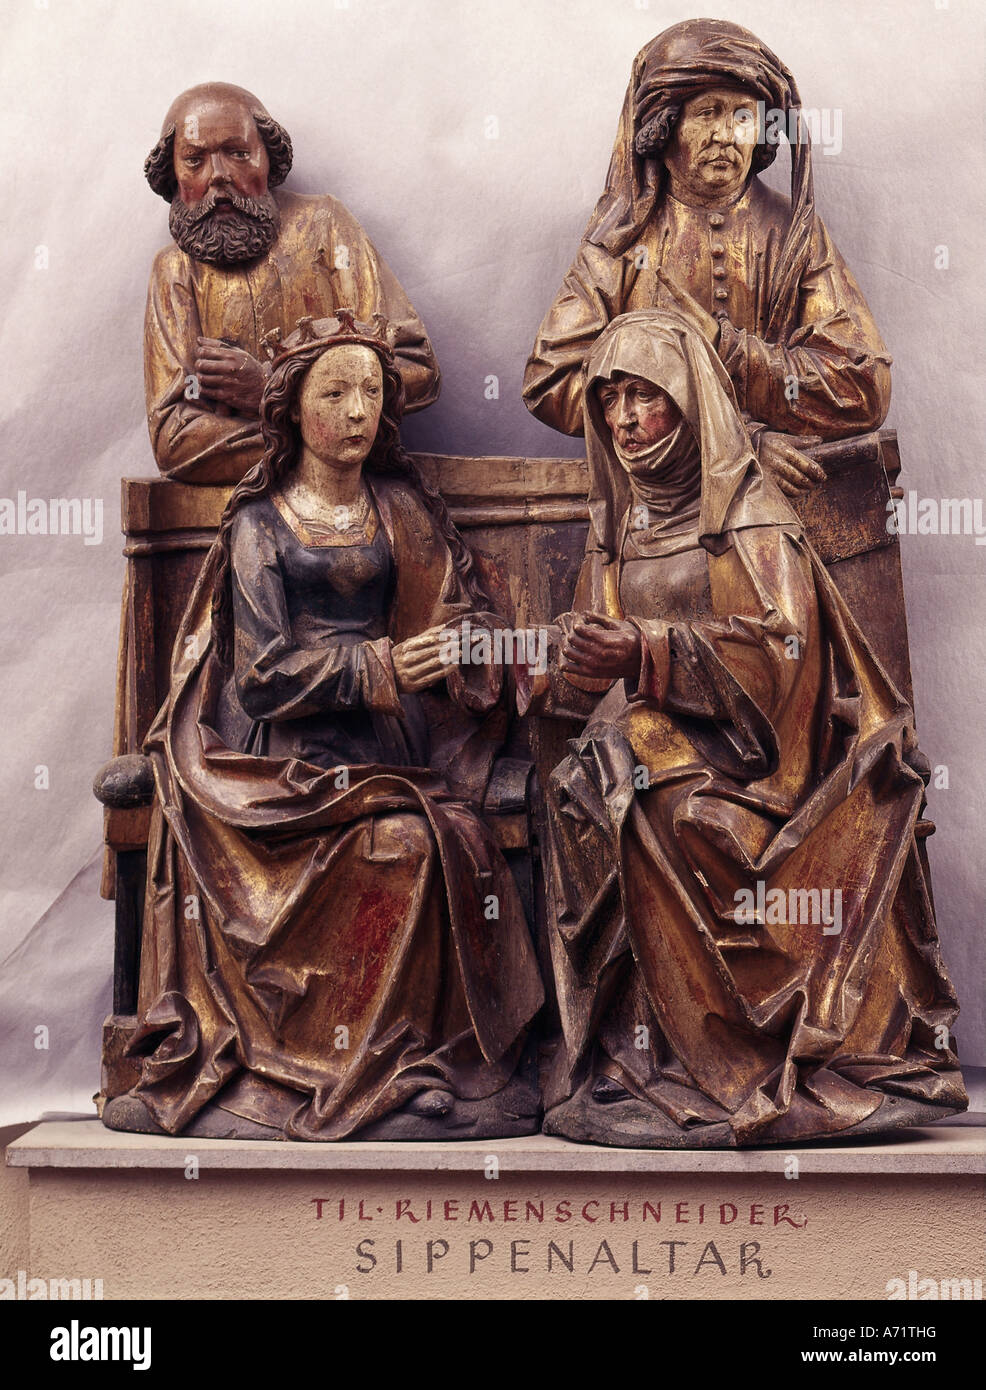 Bildende Kunst, Riemenschneider, Tilman, (ca. 1460 - 7.7.1531), Altar der Heiligen Sippe, Holz, Mainfraenkisches Museum, Würzburg, Motte Stockfoto